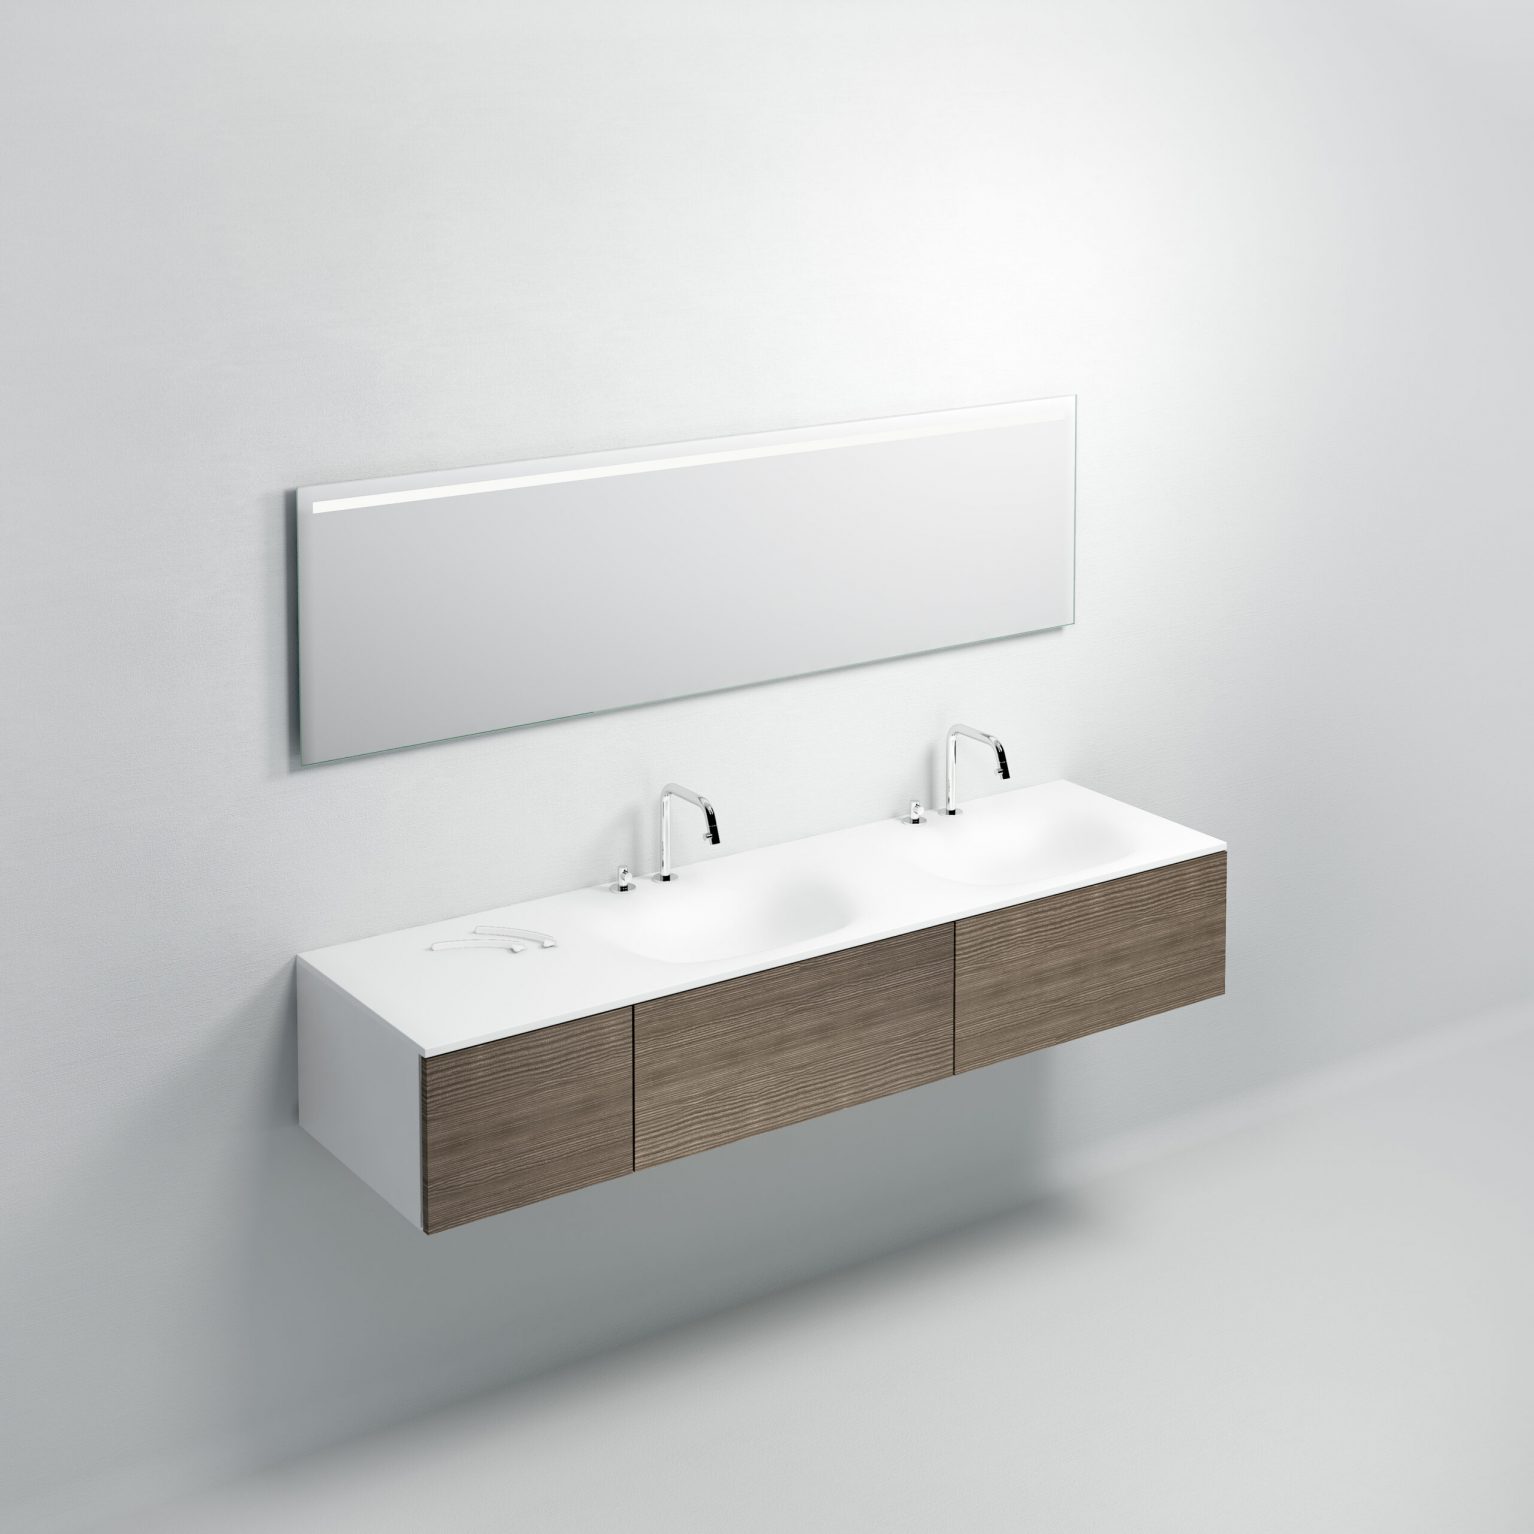 wastafel-wit-toilet-badkamer-luxe-sanitair-Hammock-clou-CL021307026R-aluite-180cm-wasbak-waskom-twee-dubbel-blad-kraangat-afvoer-shadow-Sp